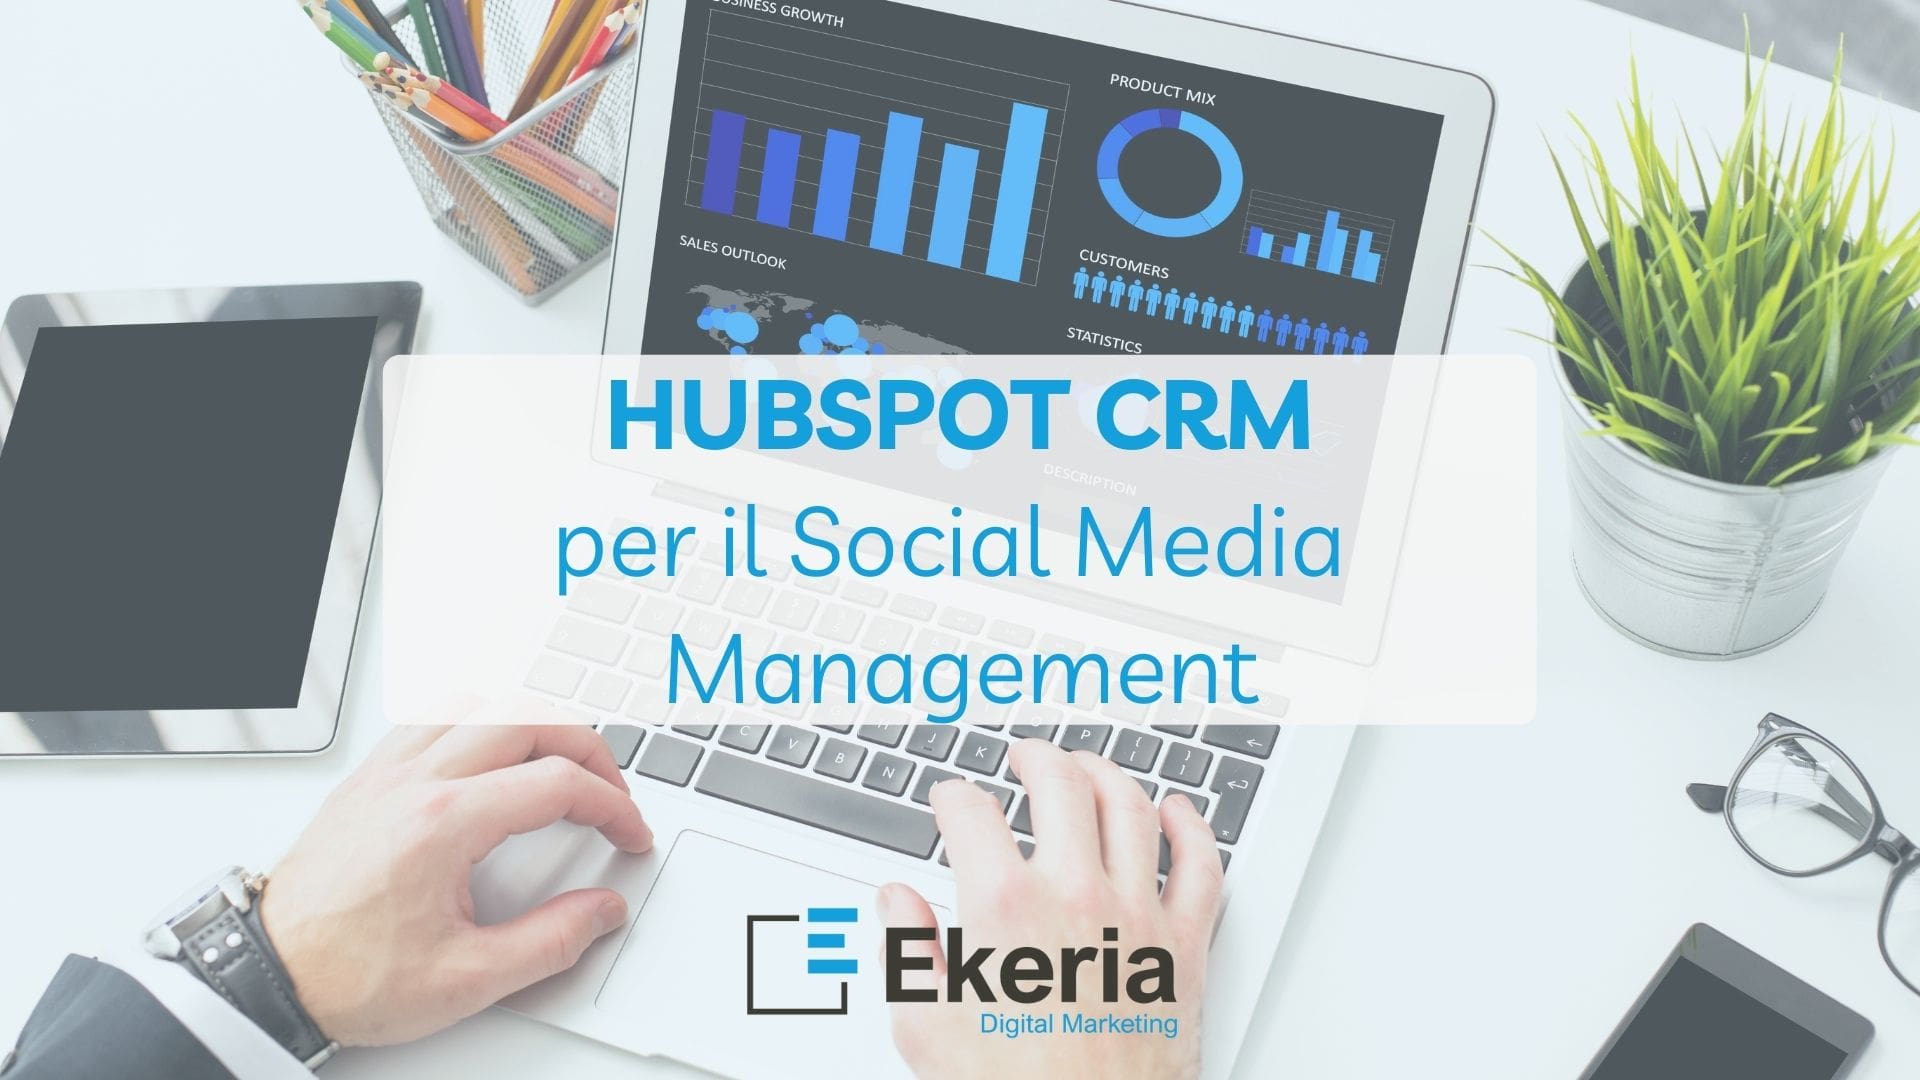 HubSpot-CRM-per-il-Social-Media-Management-Ekeria.jpg